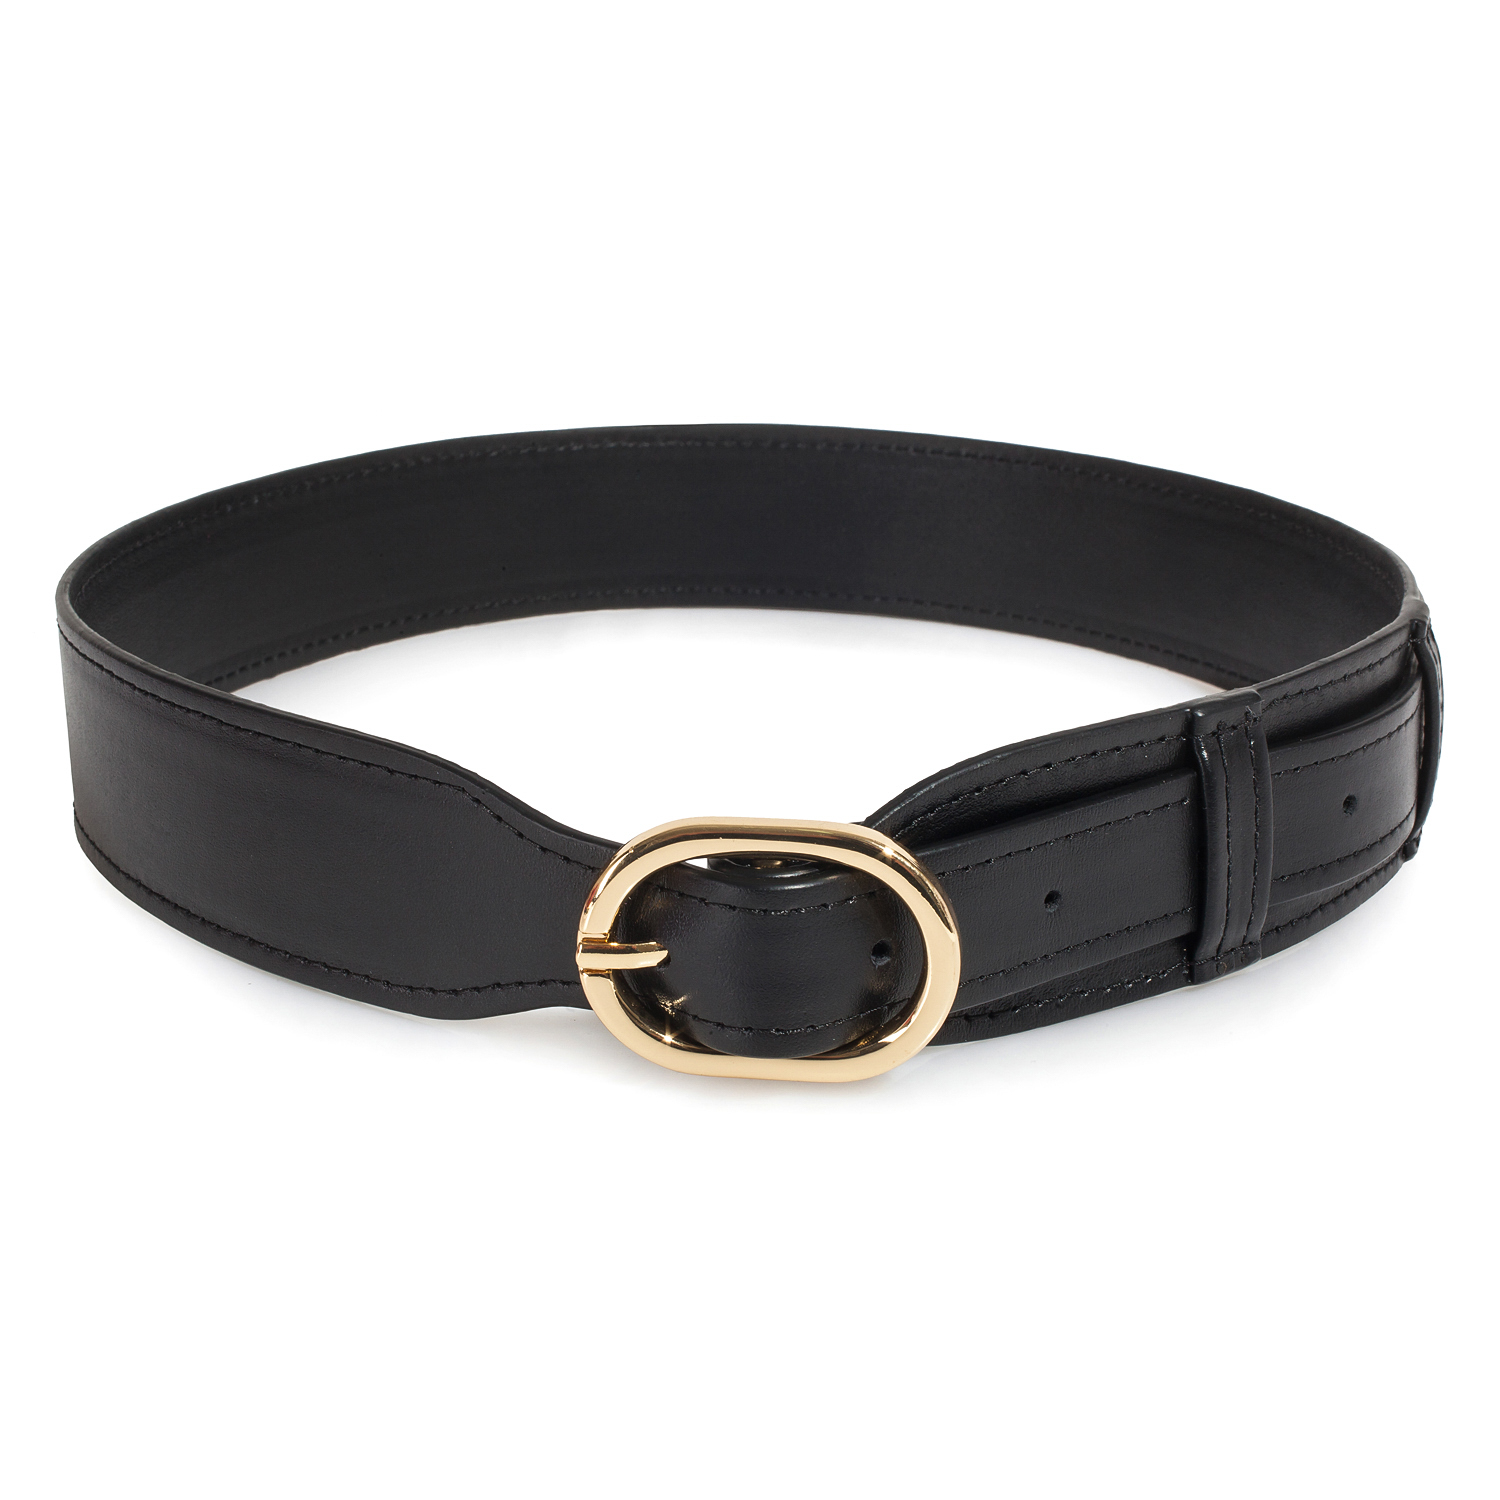 Women’s leather belt KF-3858. Buy women's leather Belt online on store ...